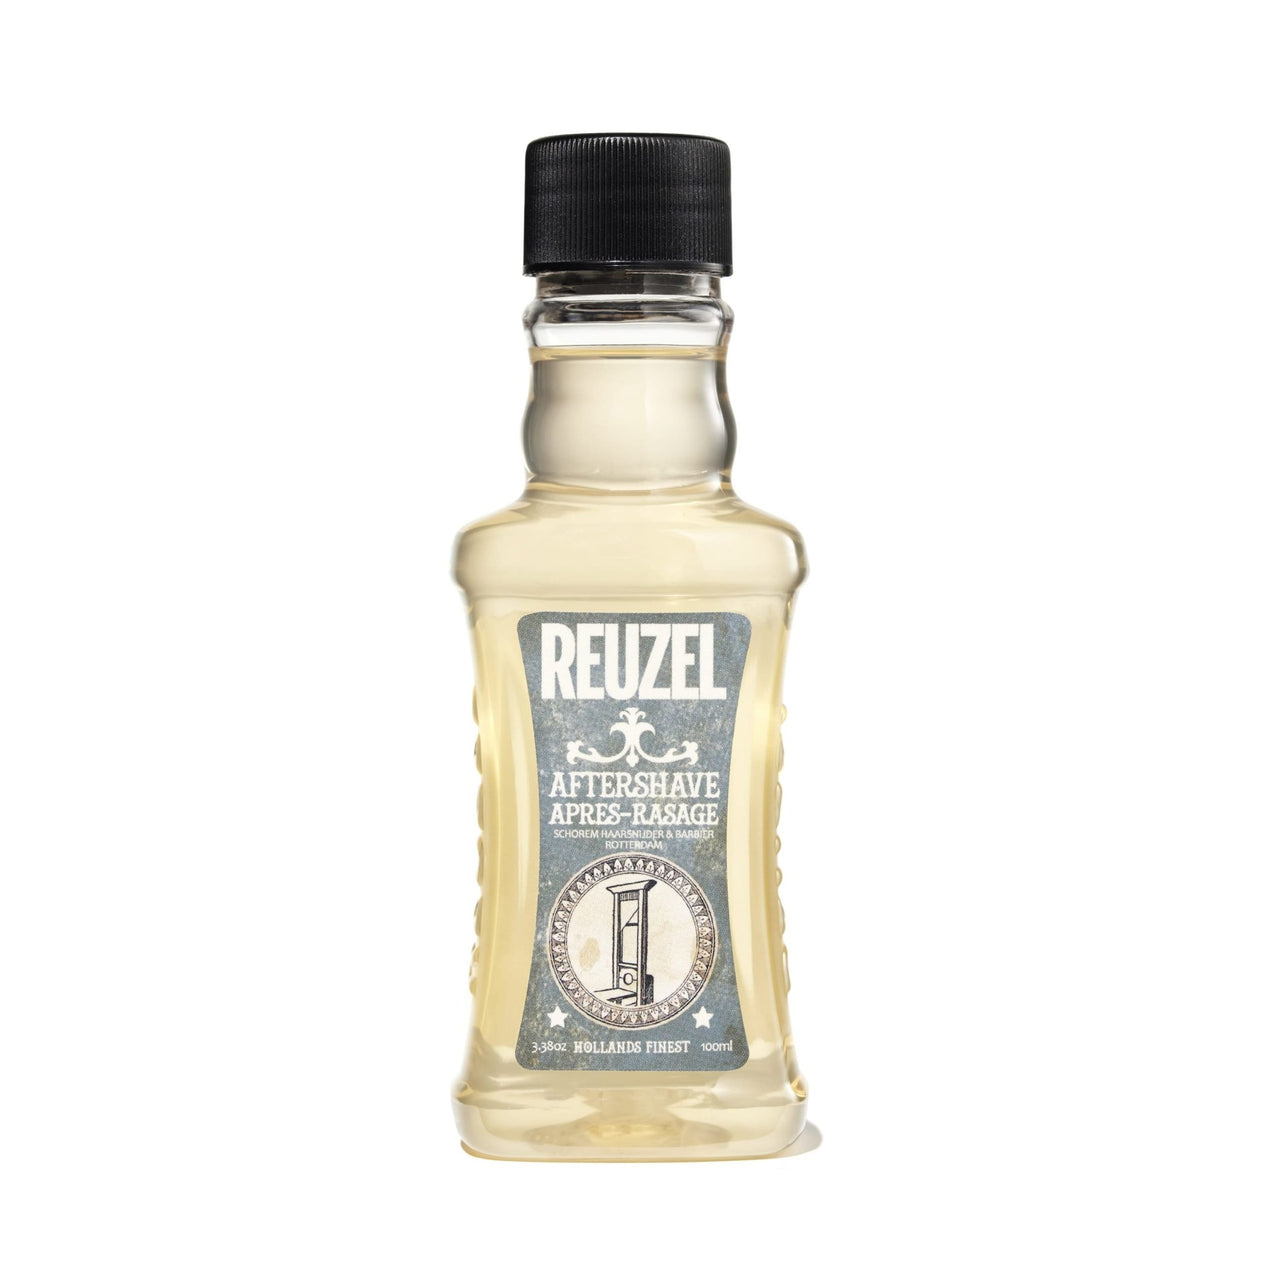 Reuzel Aftershave 